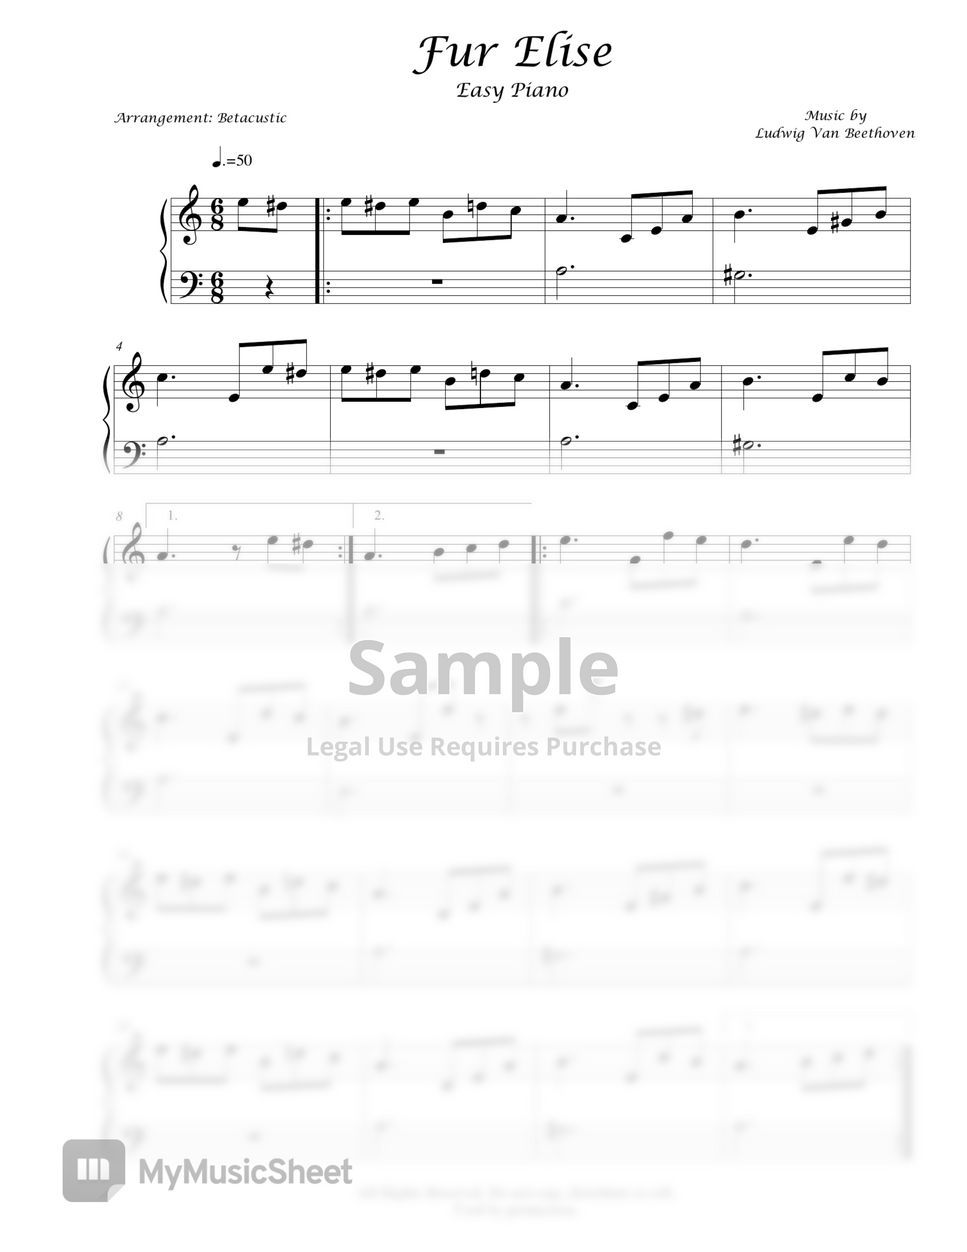 Ludwig Van Beethoven - Fur Elise (Easy Piano) Sheets by Betacustic